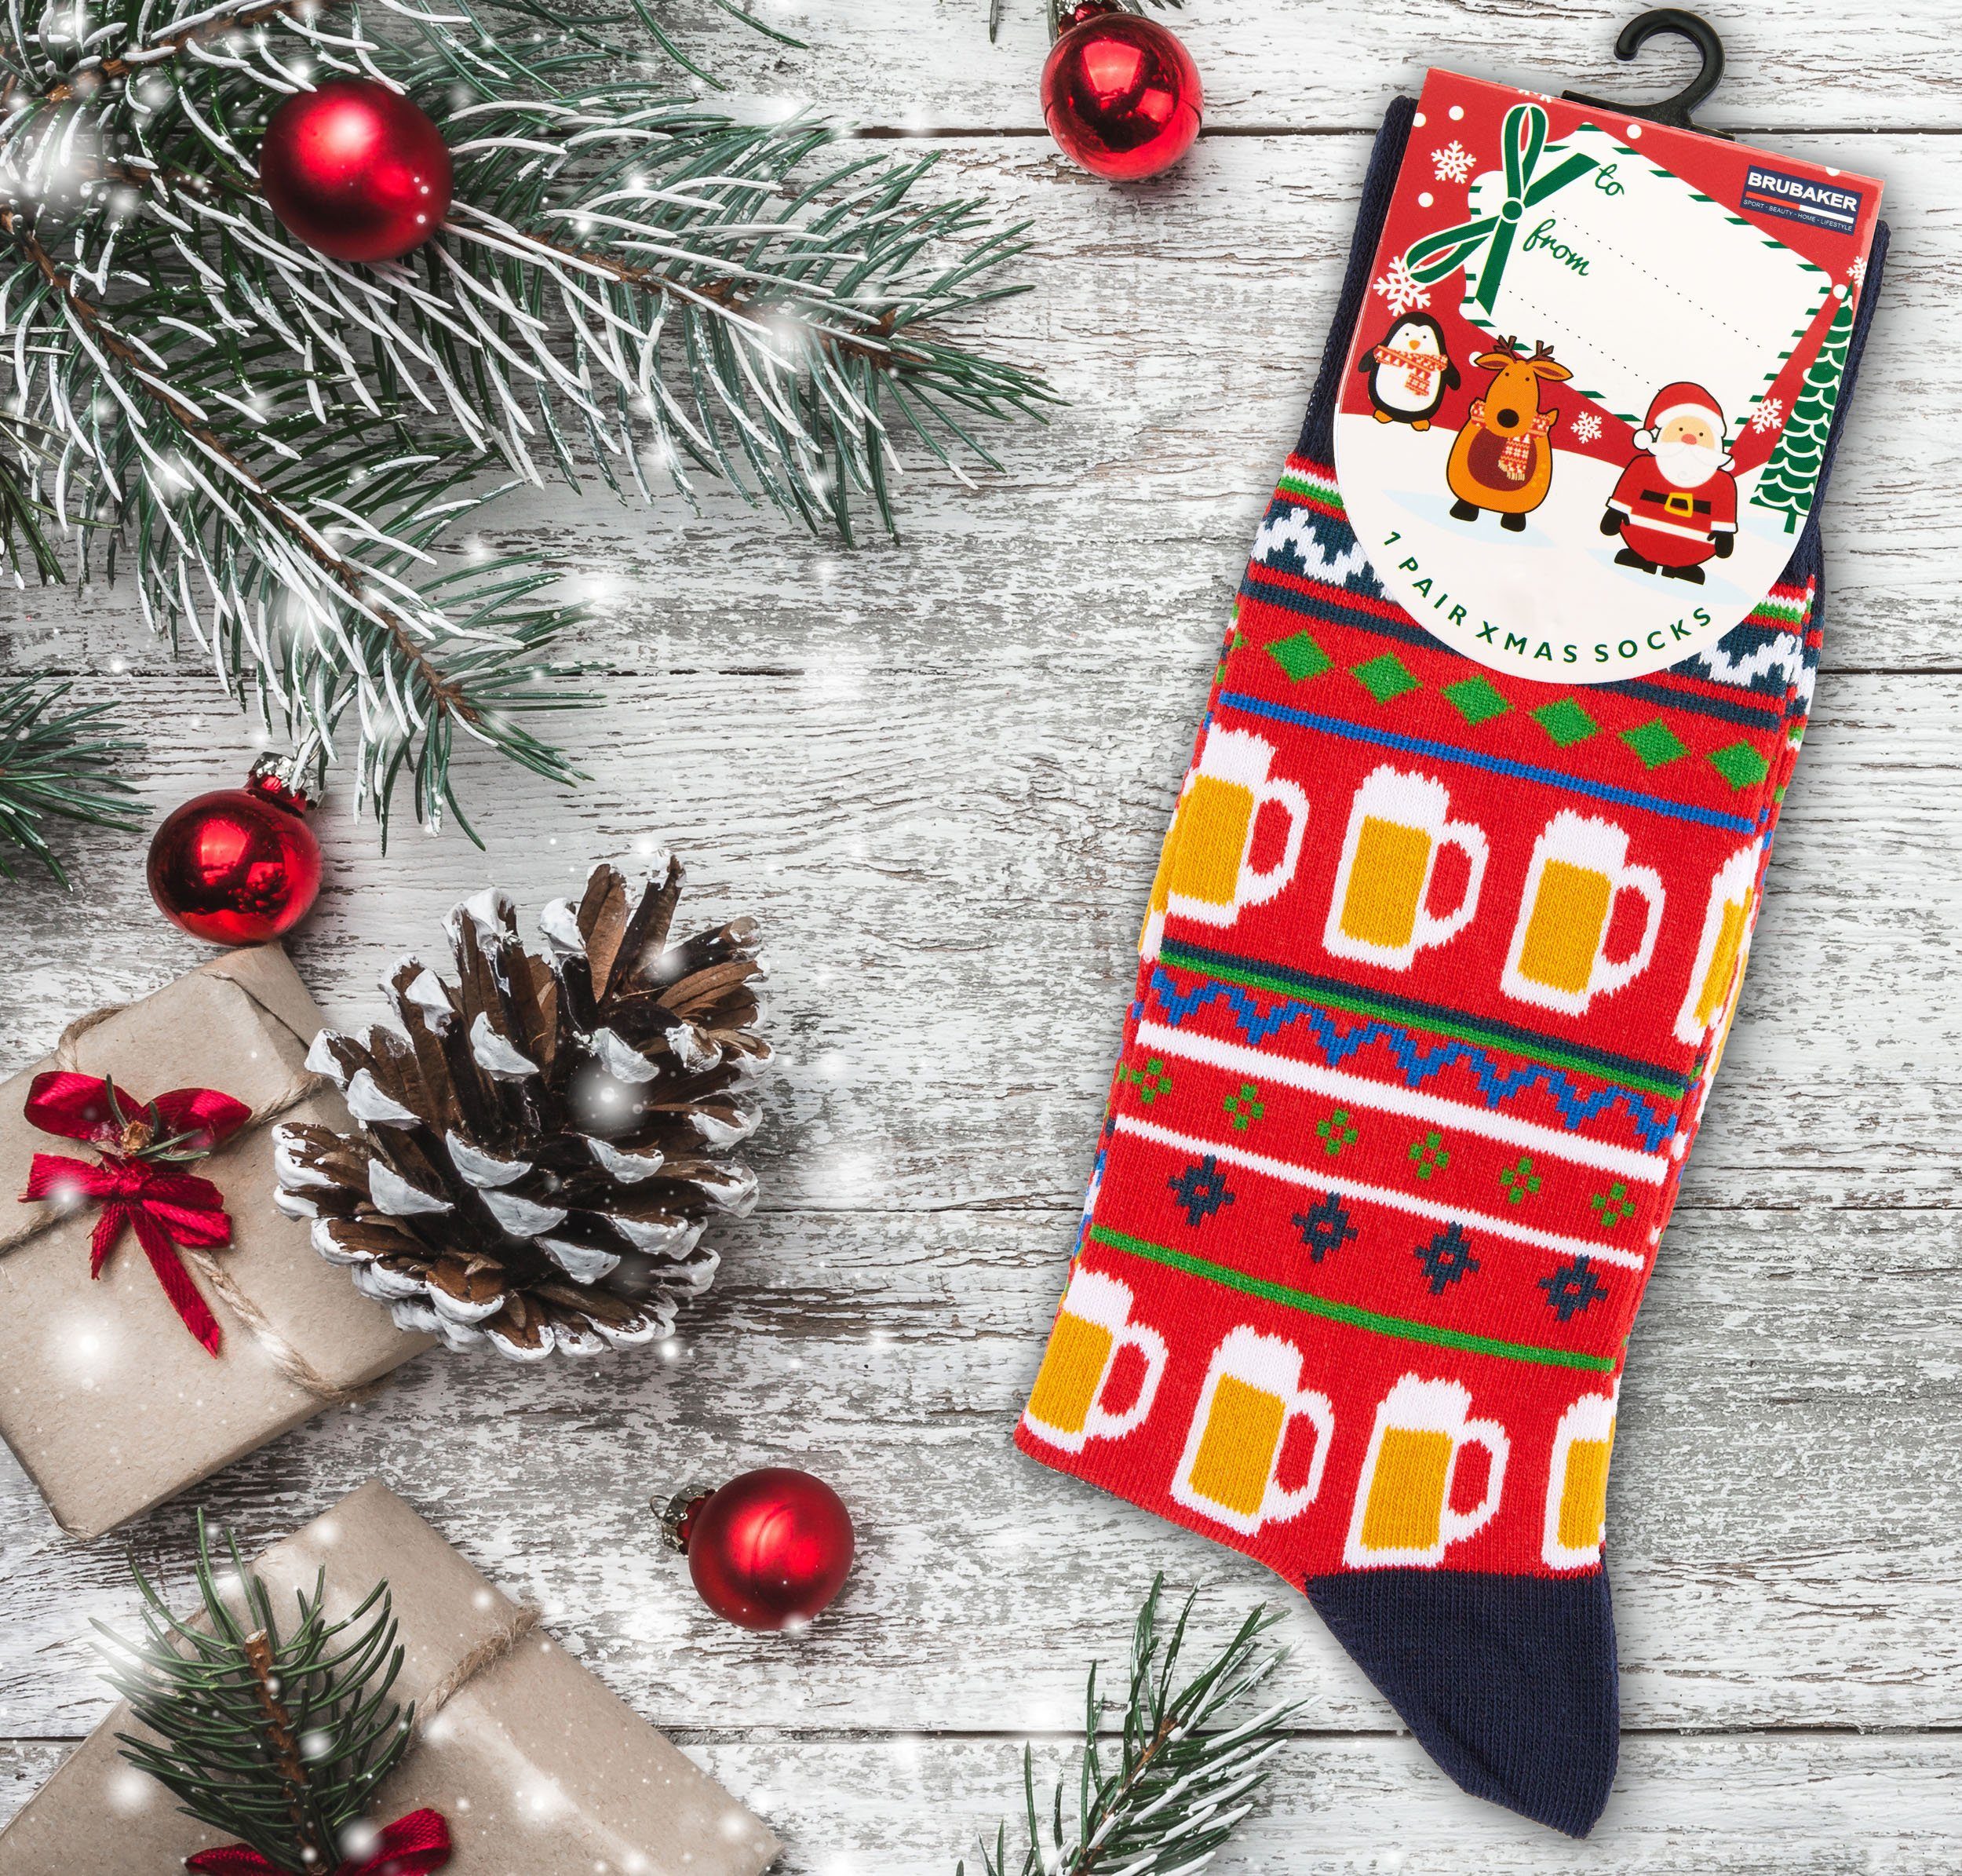 BRUBAKER Socken Weihnachtssocken 1-Paar, - Weihnachtsmuster mit Baumwollsocken Nikolaus Weihnachten und Damen Xmas-Bier) für Rot (Rot, für Bier Lustige und Herren